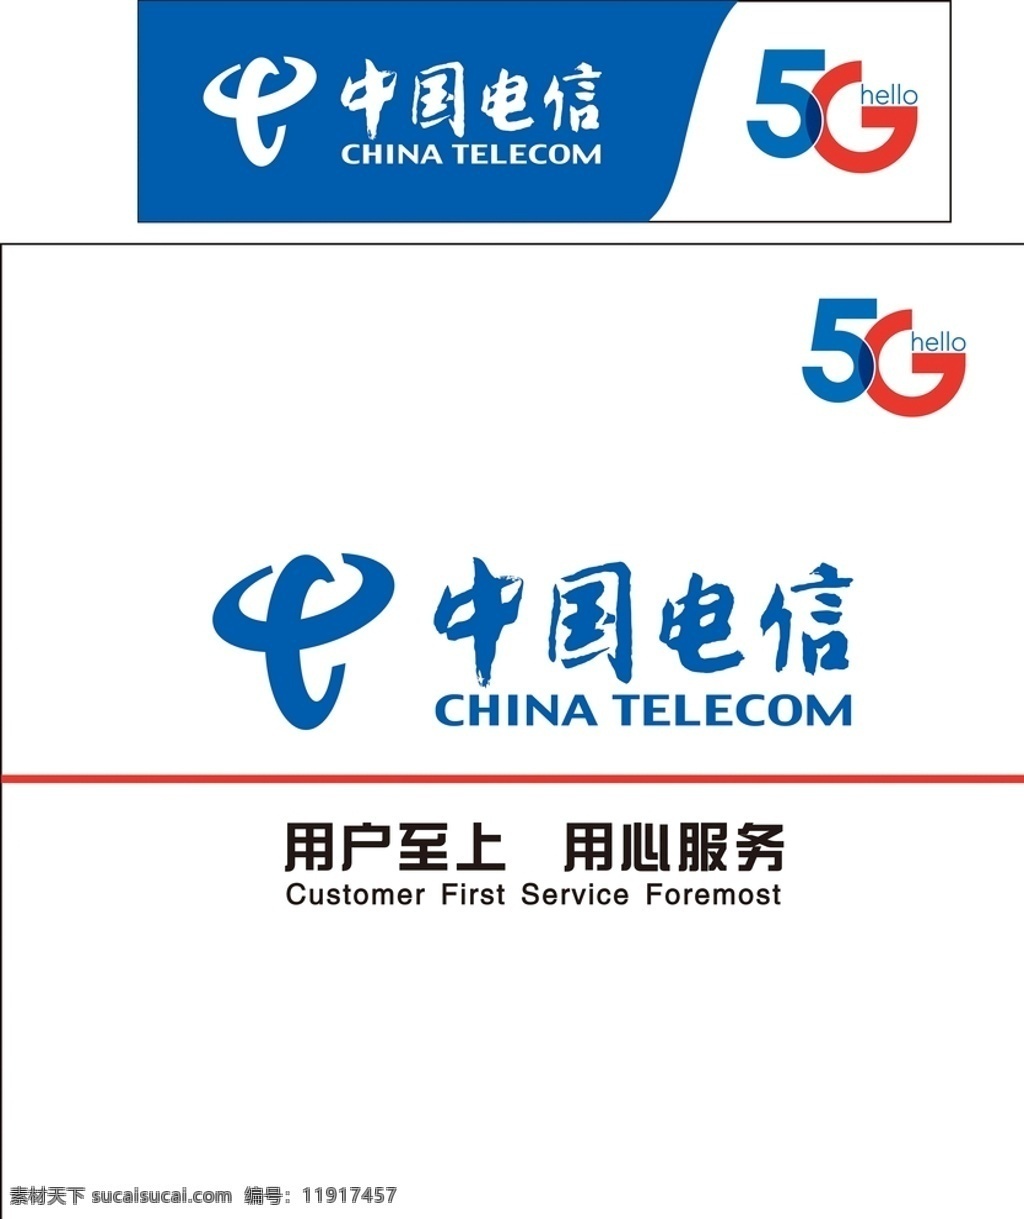 中国电信图片 中国电信 电信服务墙 5g 电信形象墙 电信 标准中国电信